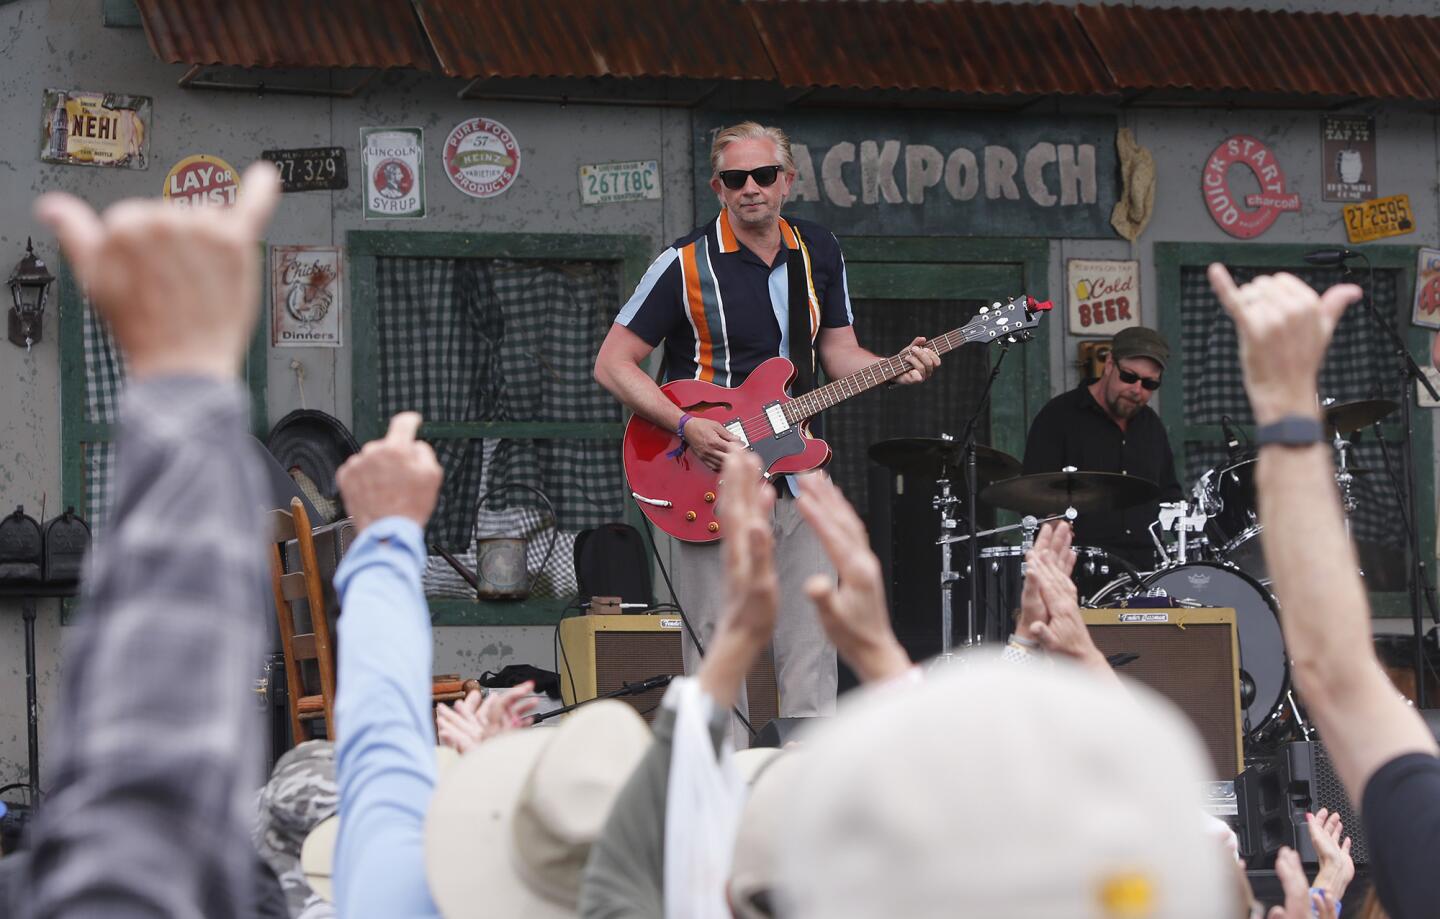 2019' Doheny Blues Festival at Dana Point's Sea Terrace Park